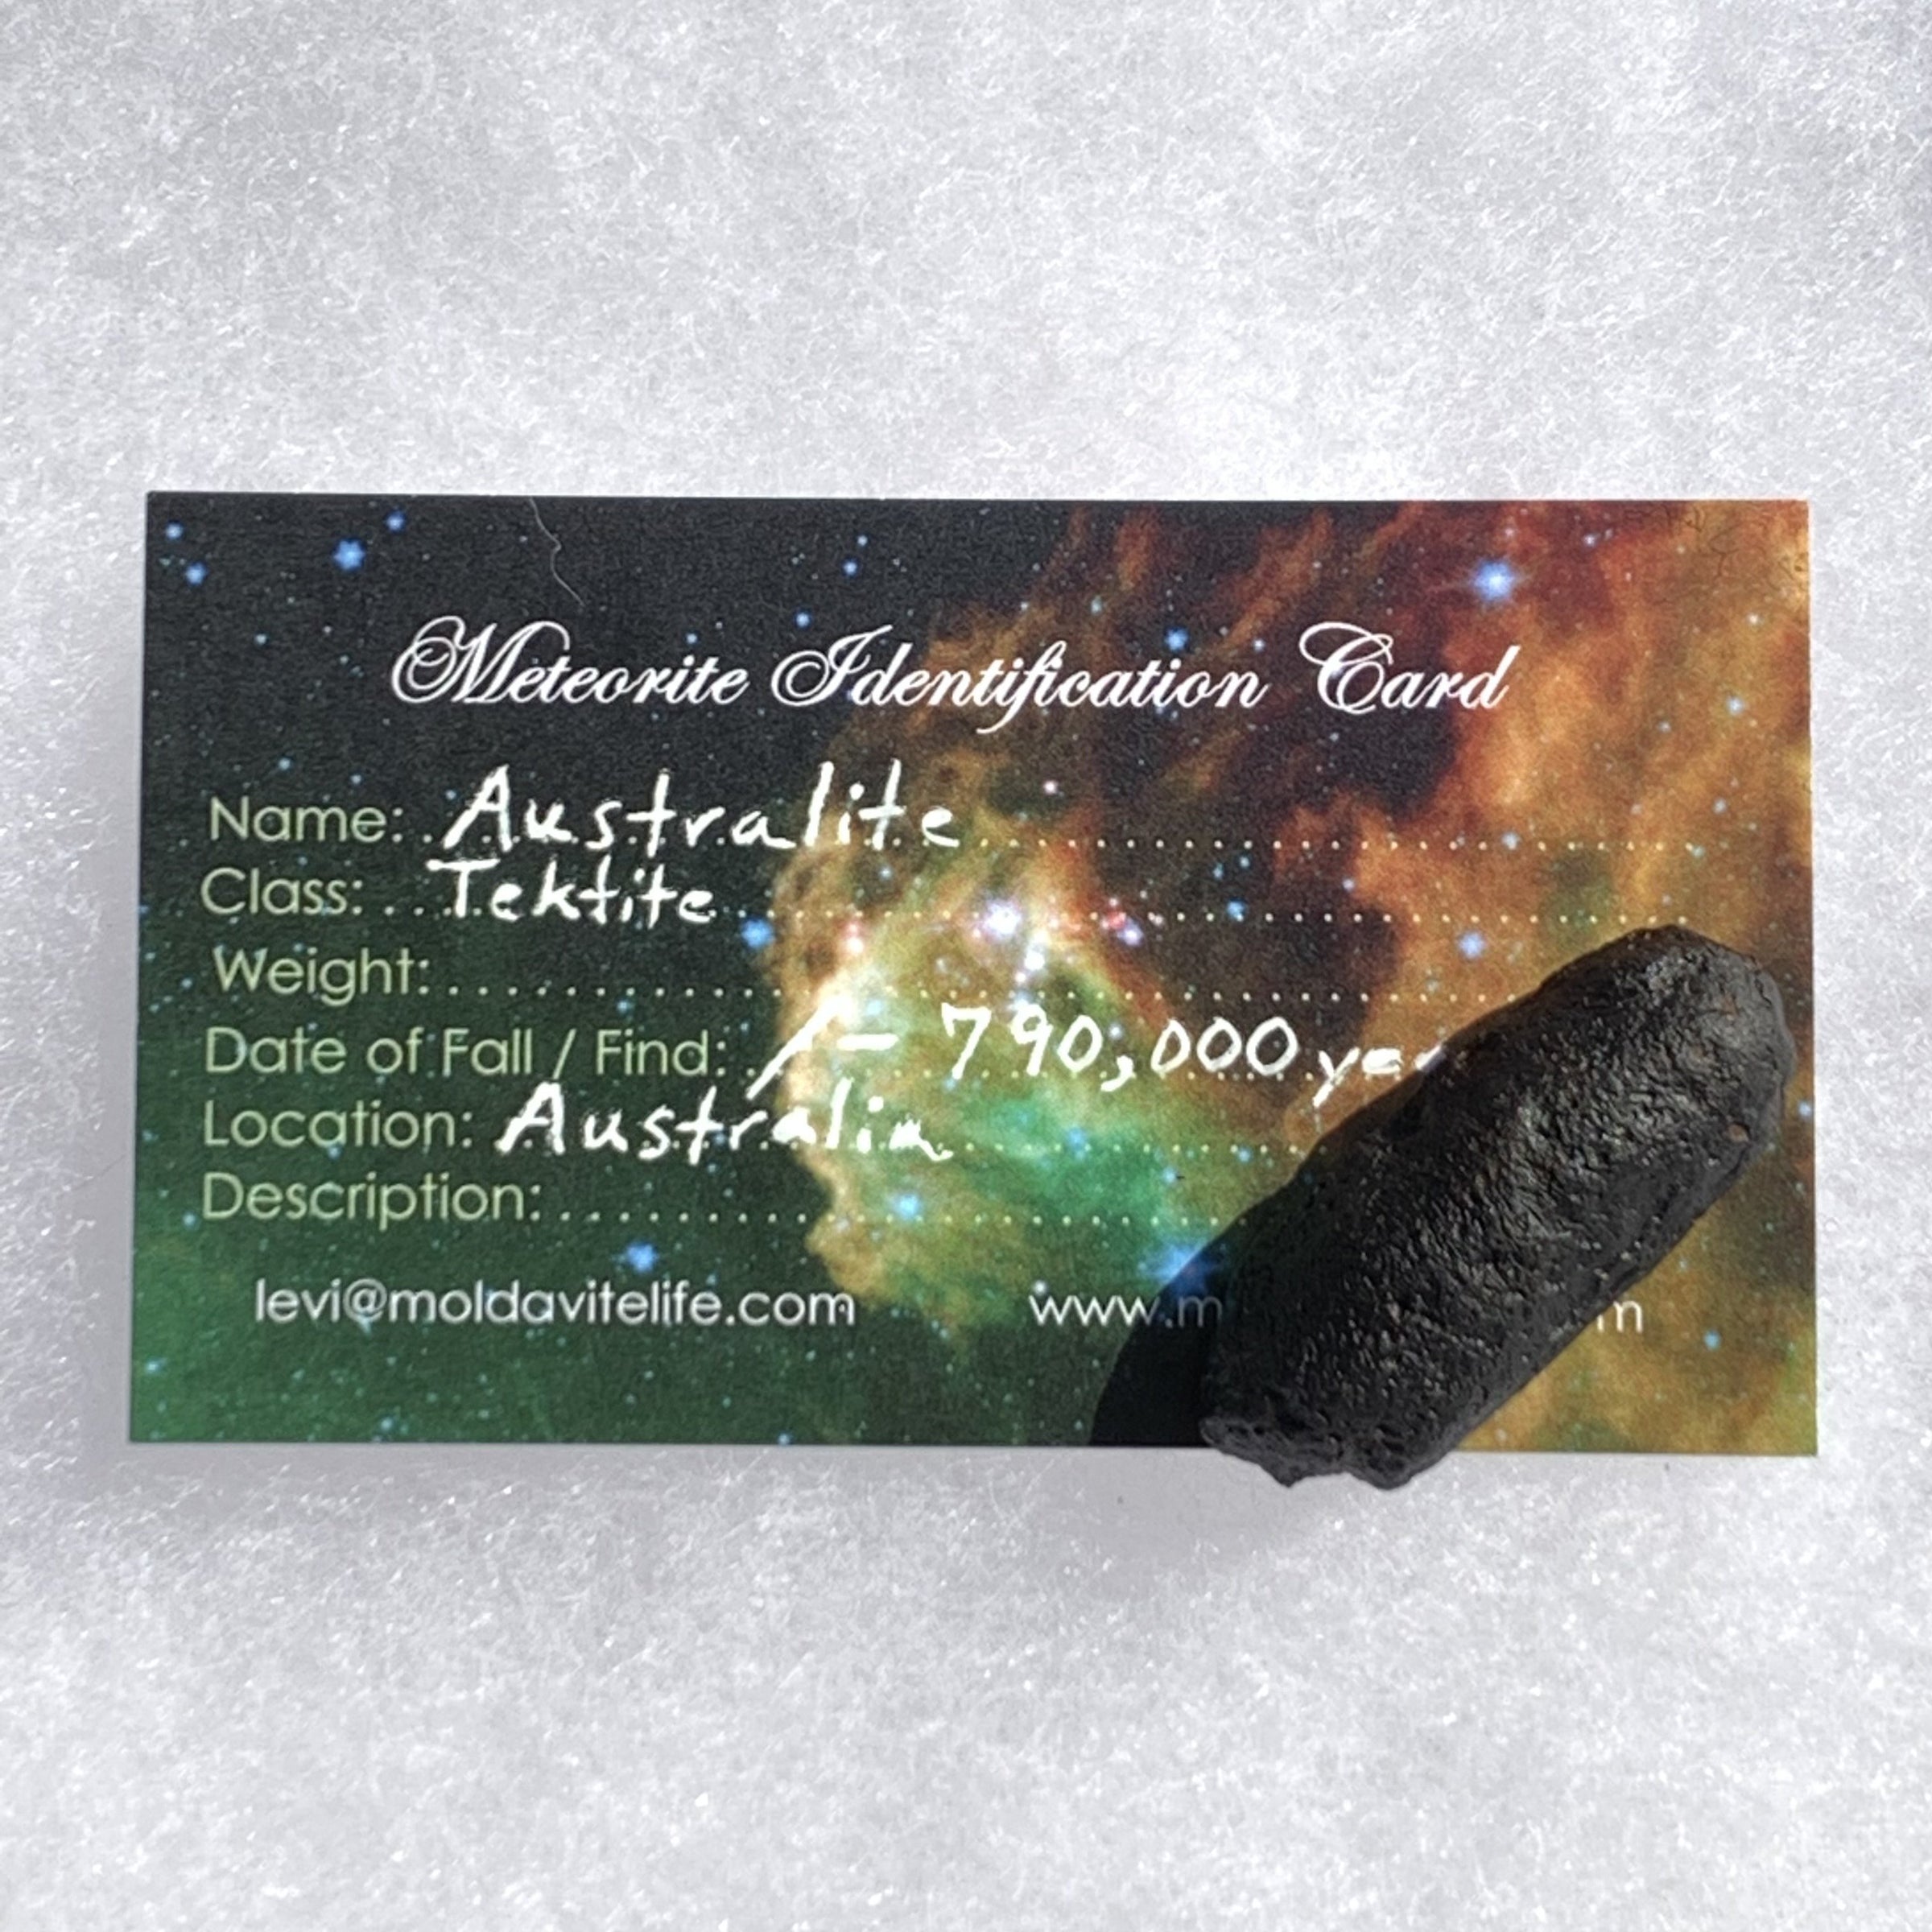 Australite Tektite 9.2 grams AU16-Moldavite Life